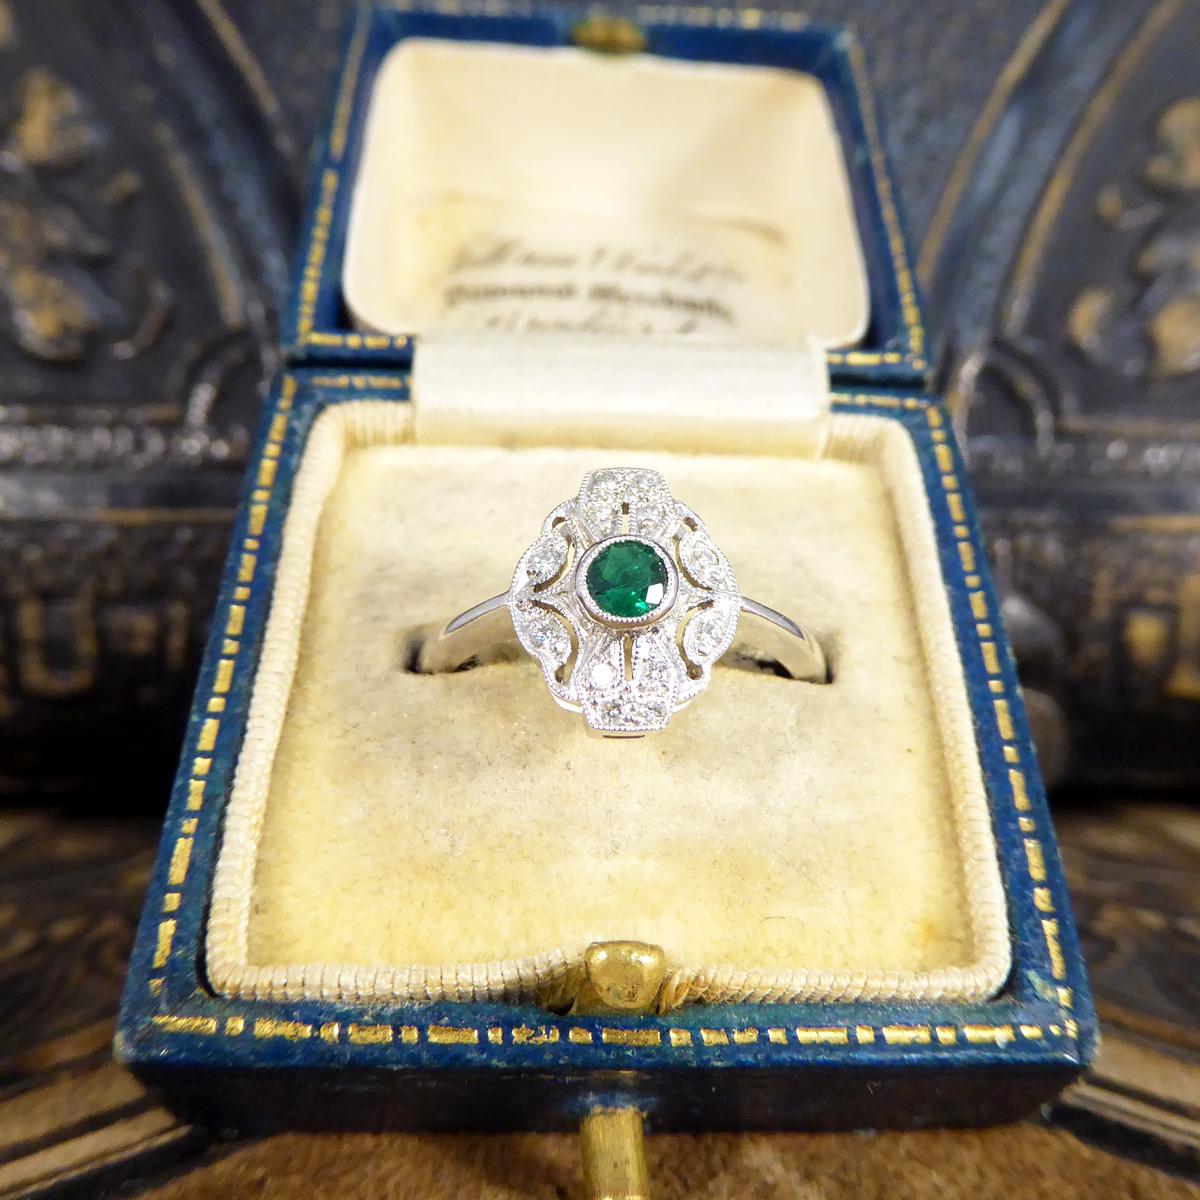 Premium Period Art Deco Replica Emerald and Diamond Ring in 18ct White Gold For Sale 4